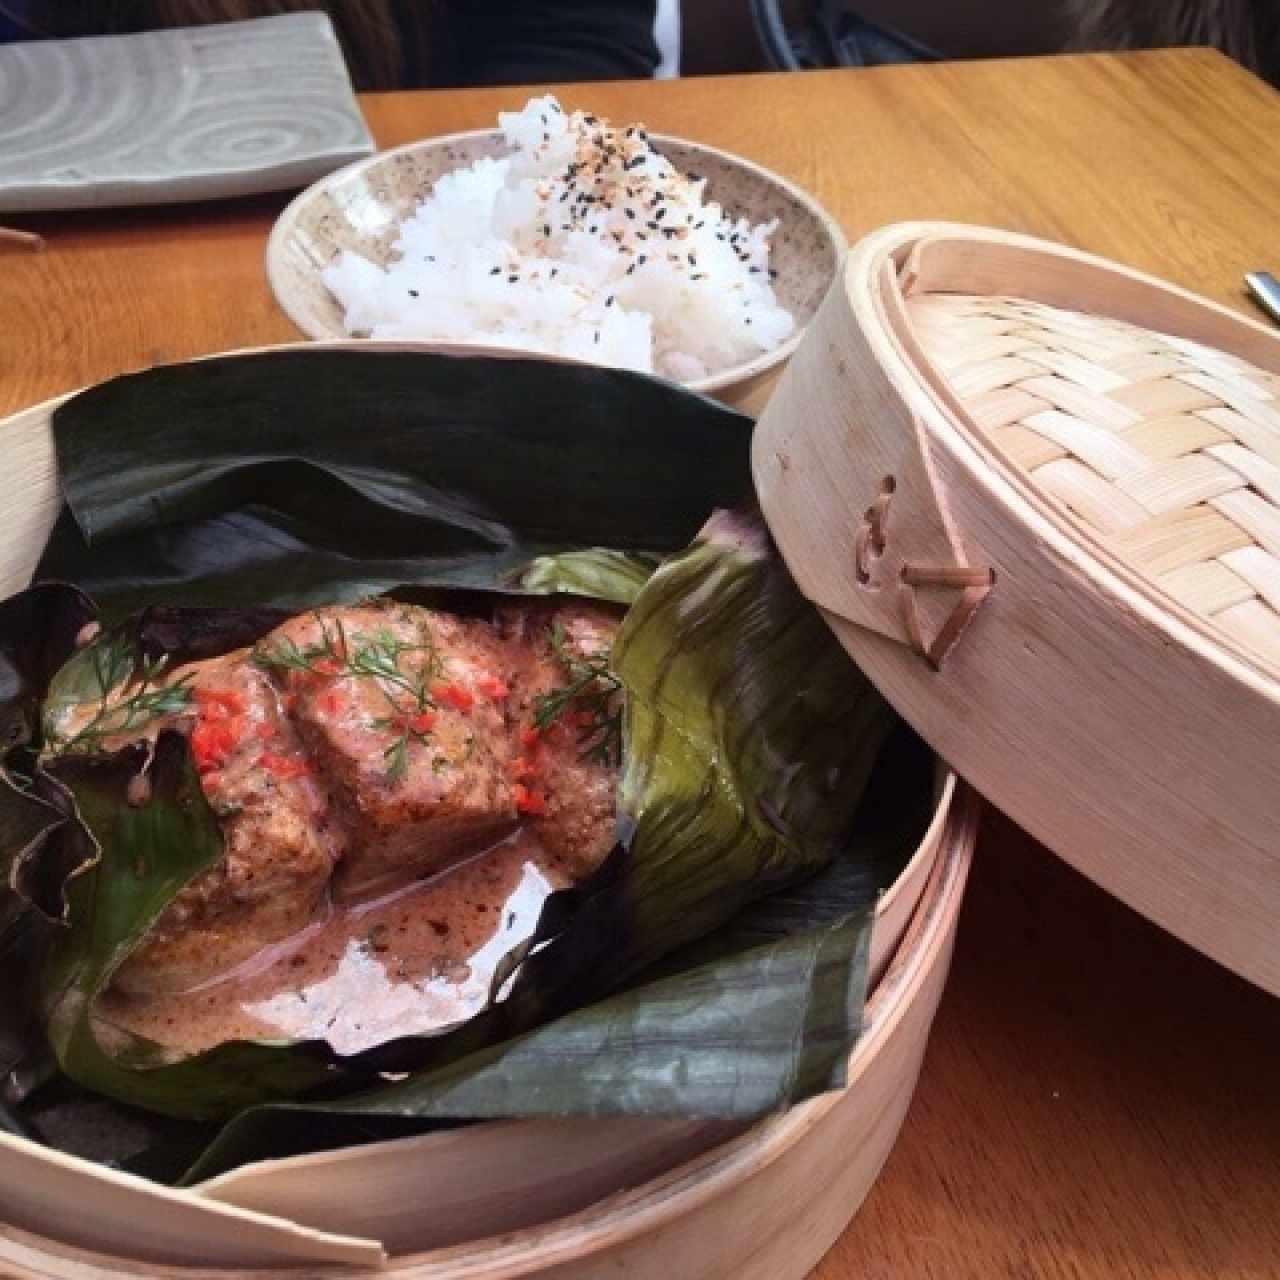 SHIROMI WRAP: pescado blanco con salsa anticuchera